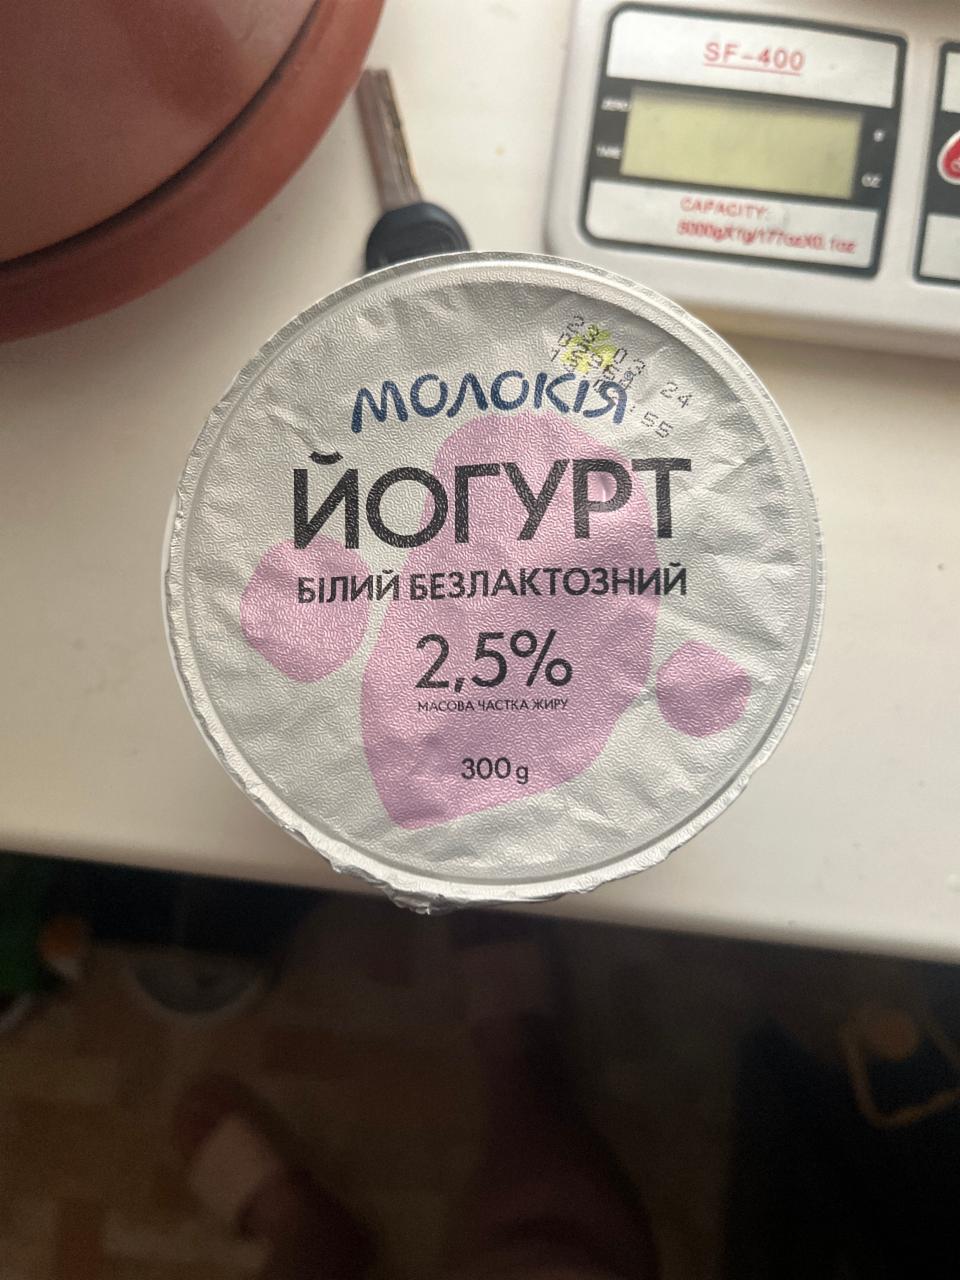 Фото - Йогурт 2.5% белый безлактозный густой Молокия